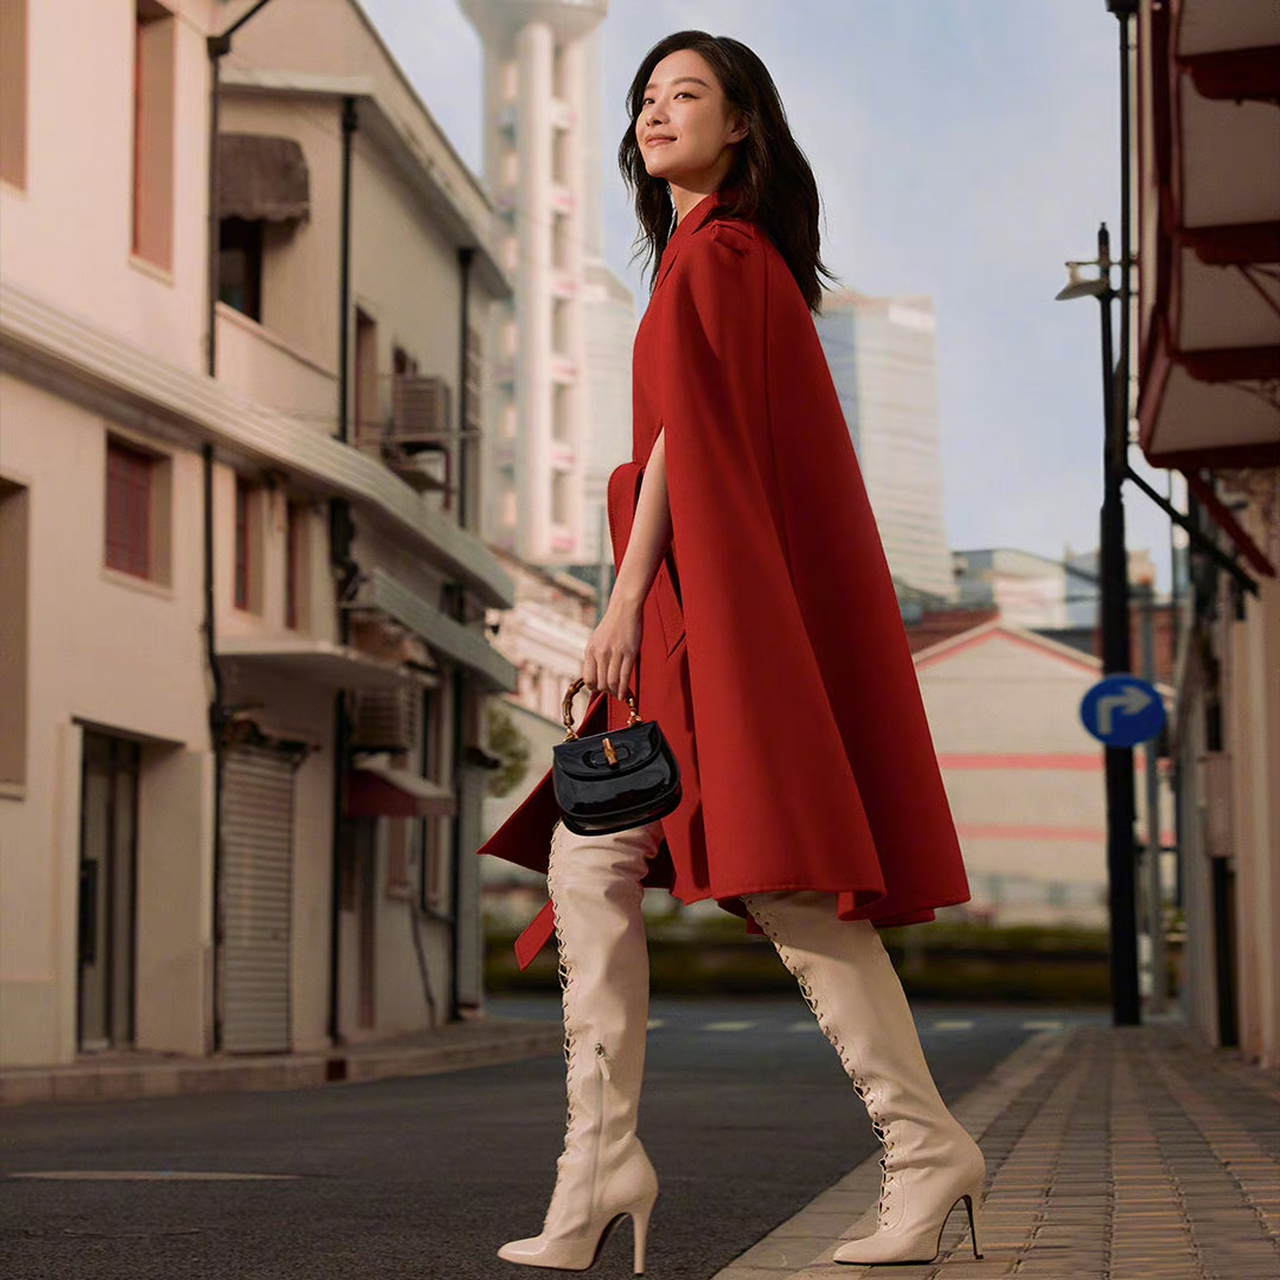 倪妮寰宇古驰典藏展宣传大片,午后暖阳街头,一身红衣造型,明亮又漂亮